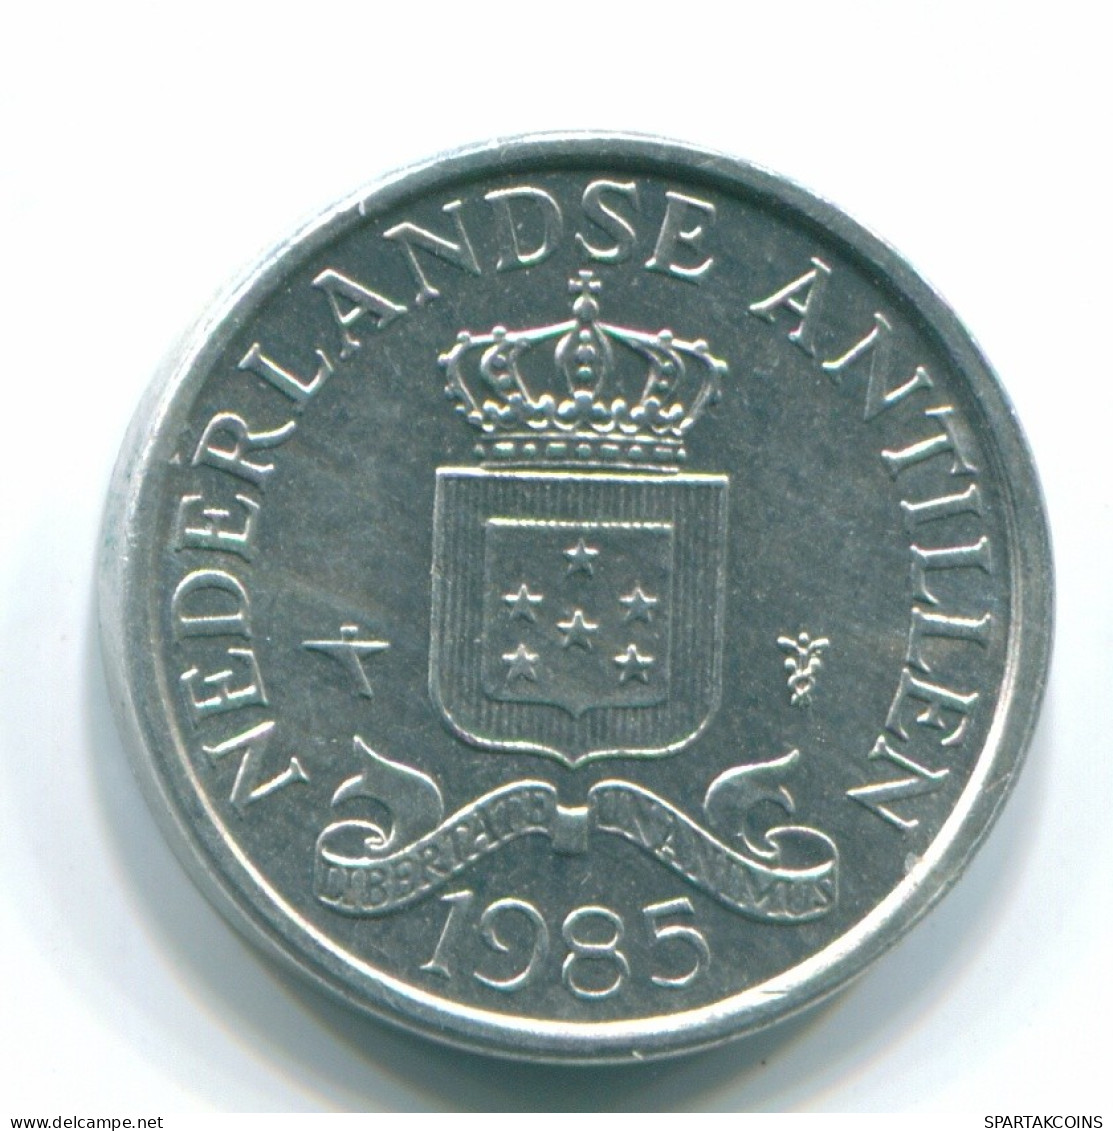 1 CENT 1985 NIEDERLÄNDISCHE ANTILLEN Aluminium Koloniale Münze #S11213.D.A - Netherlands Antilles